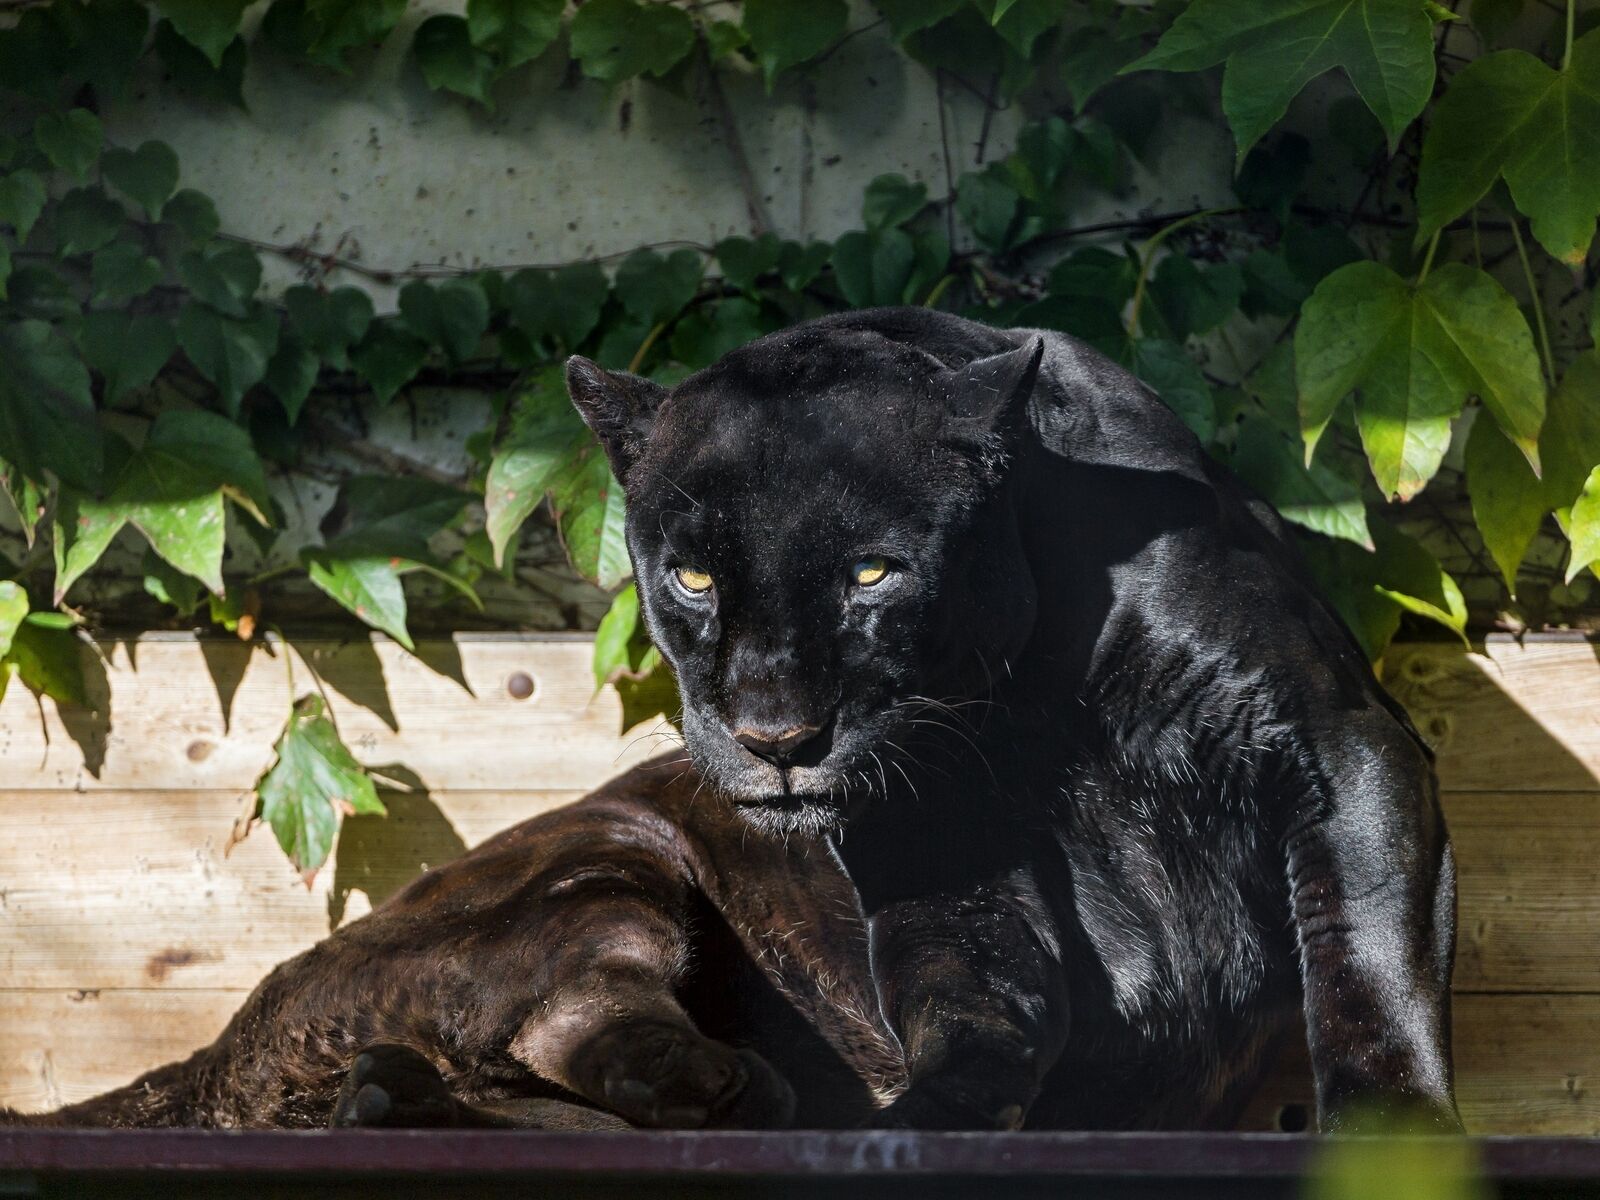 Cars black jaguar panther wild cat predator foliage sun Gaming Desk Mat